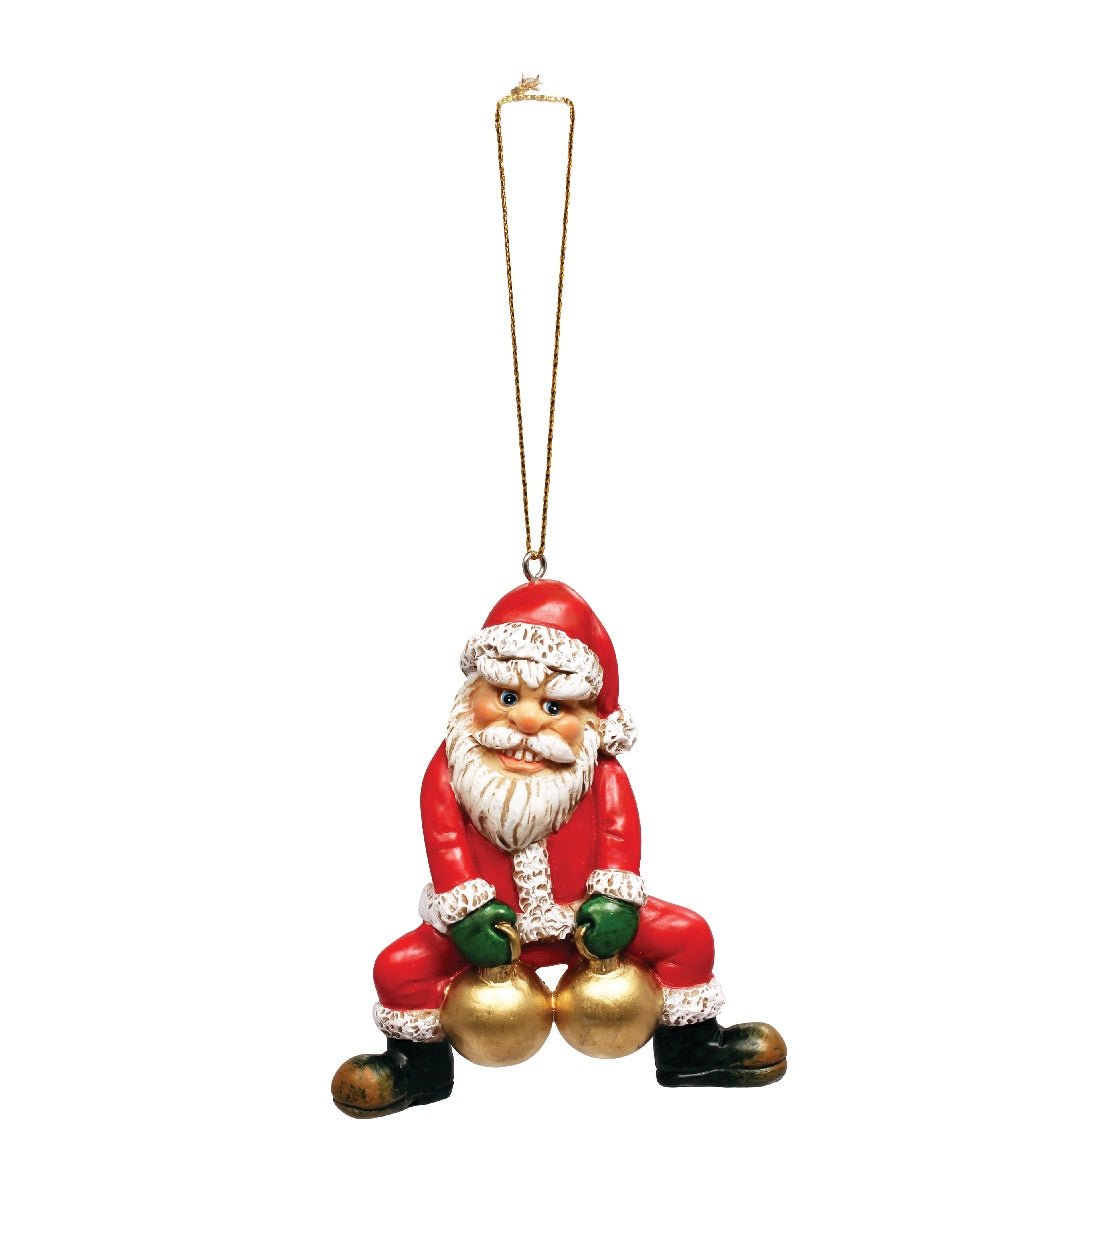 Bad Santa Crooked Christmas Ornament